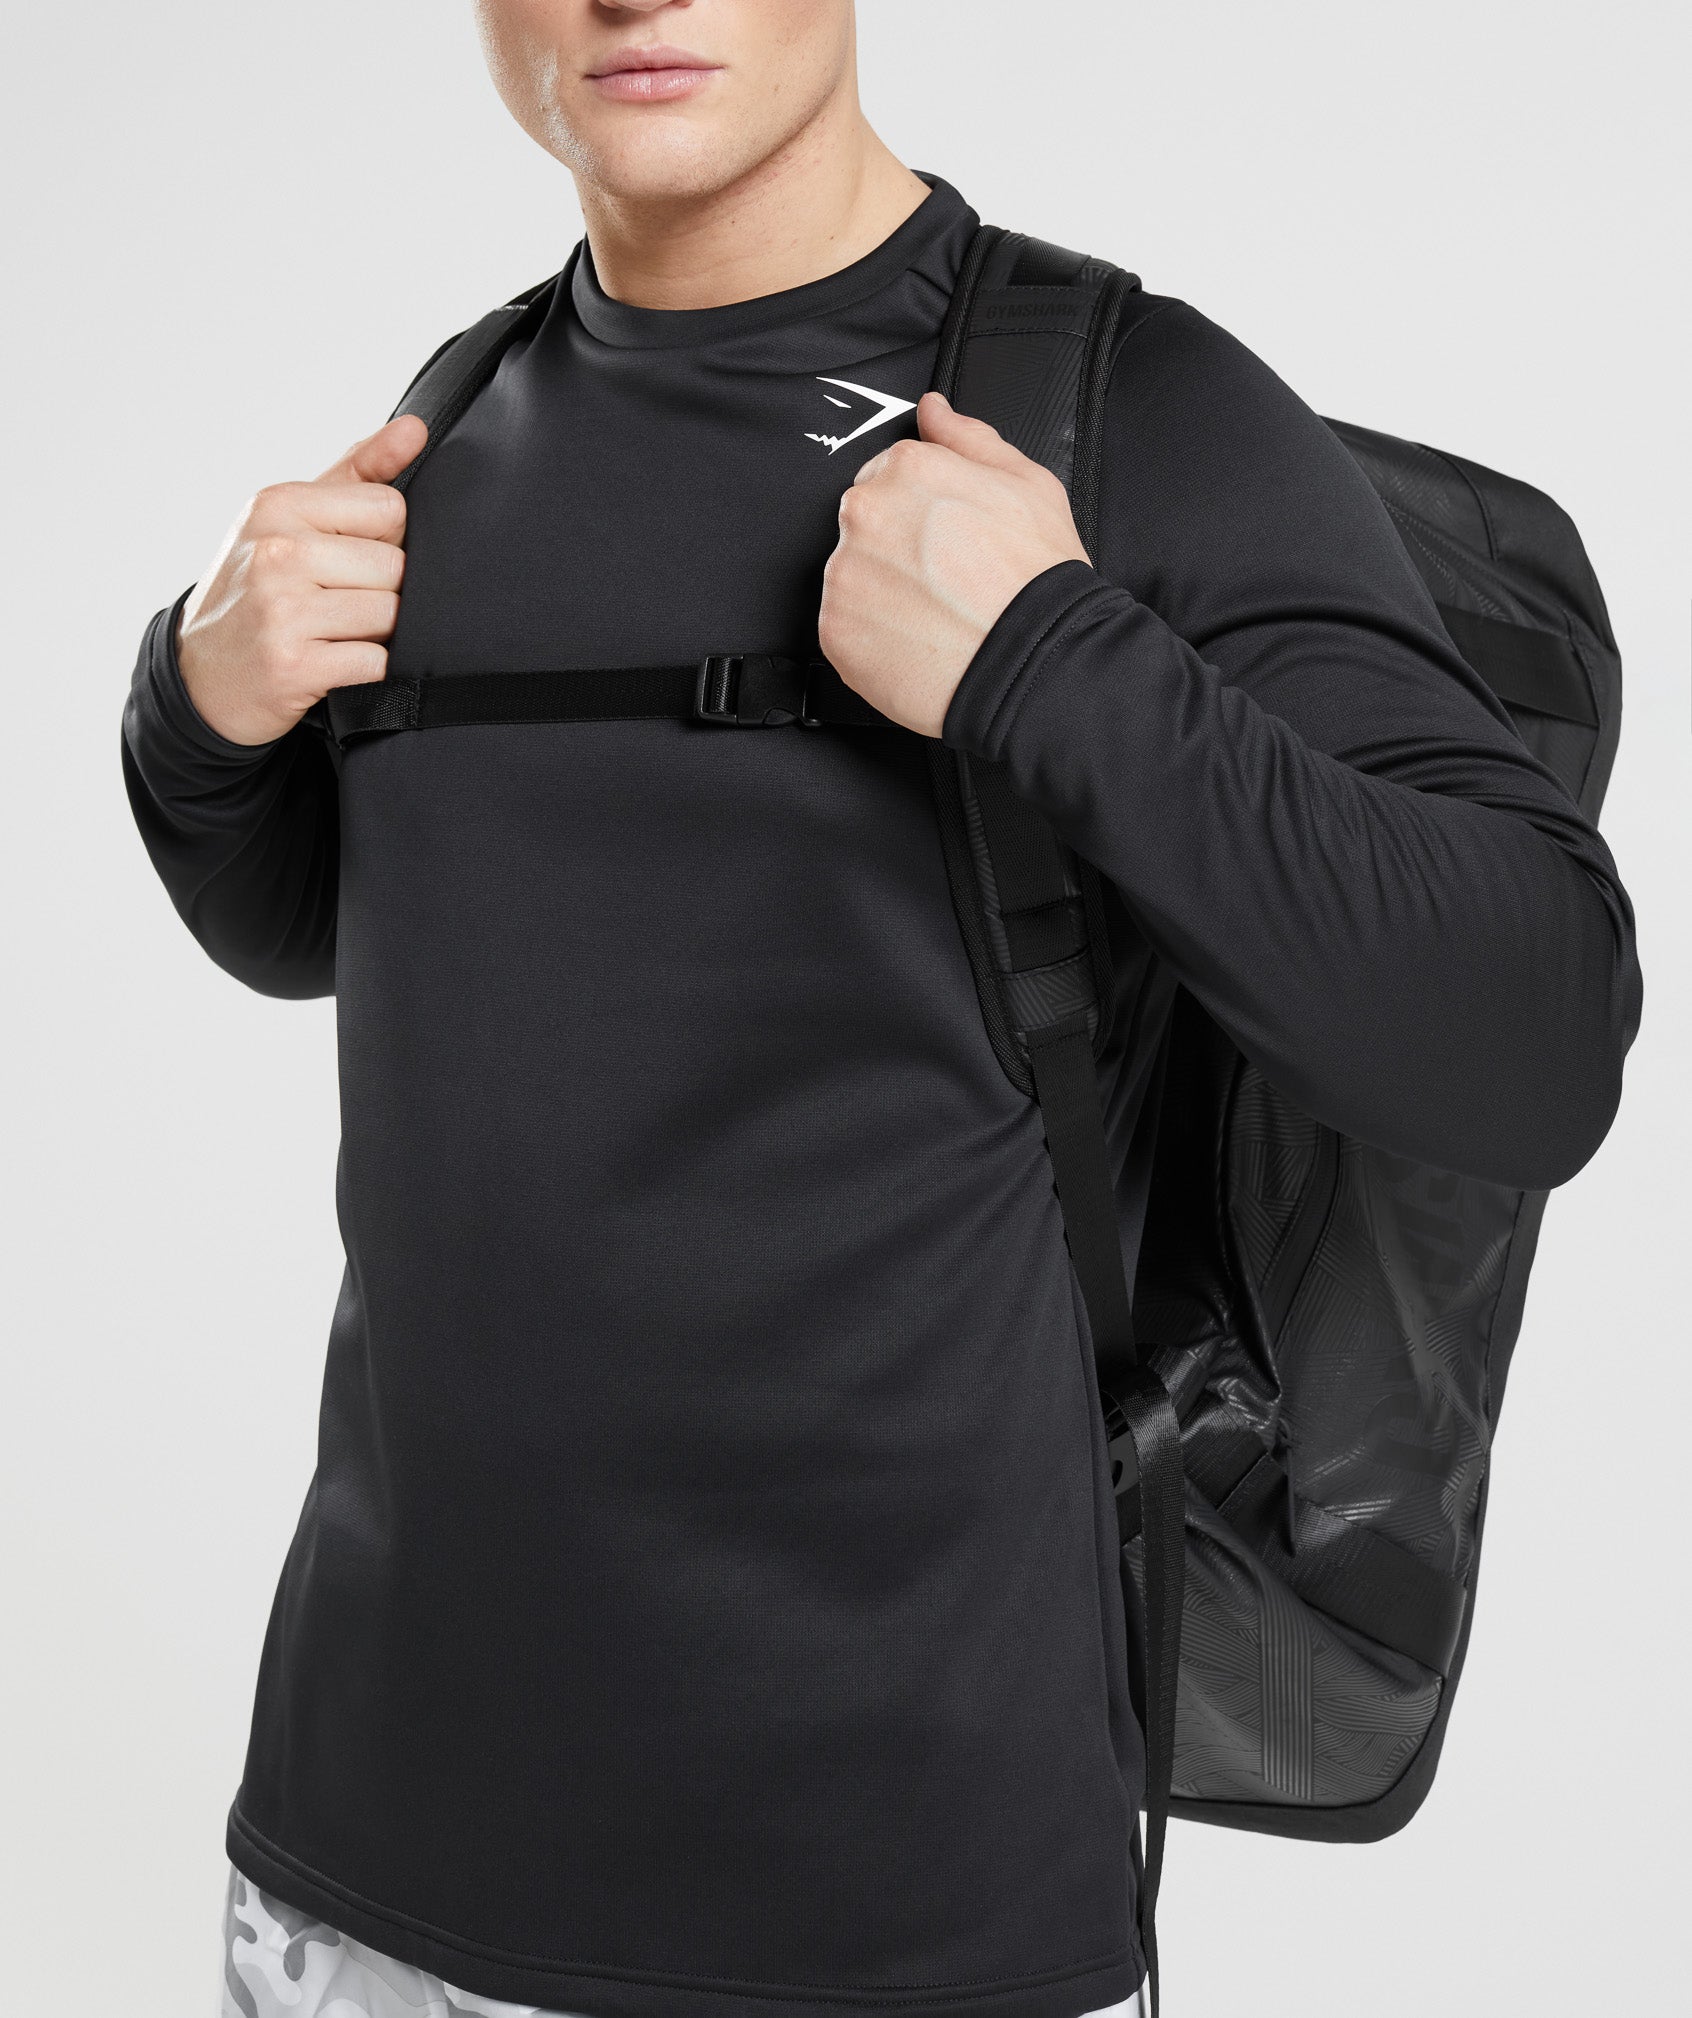 X-Series Duffle Bag in Black Print - view 6